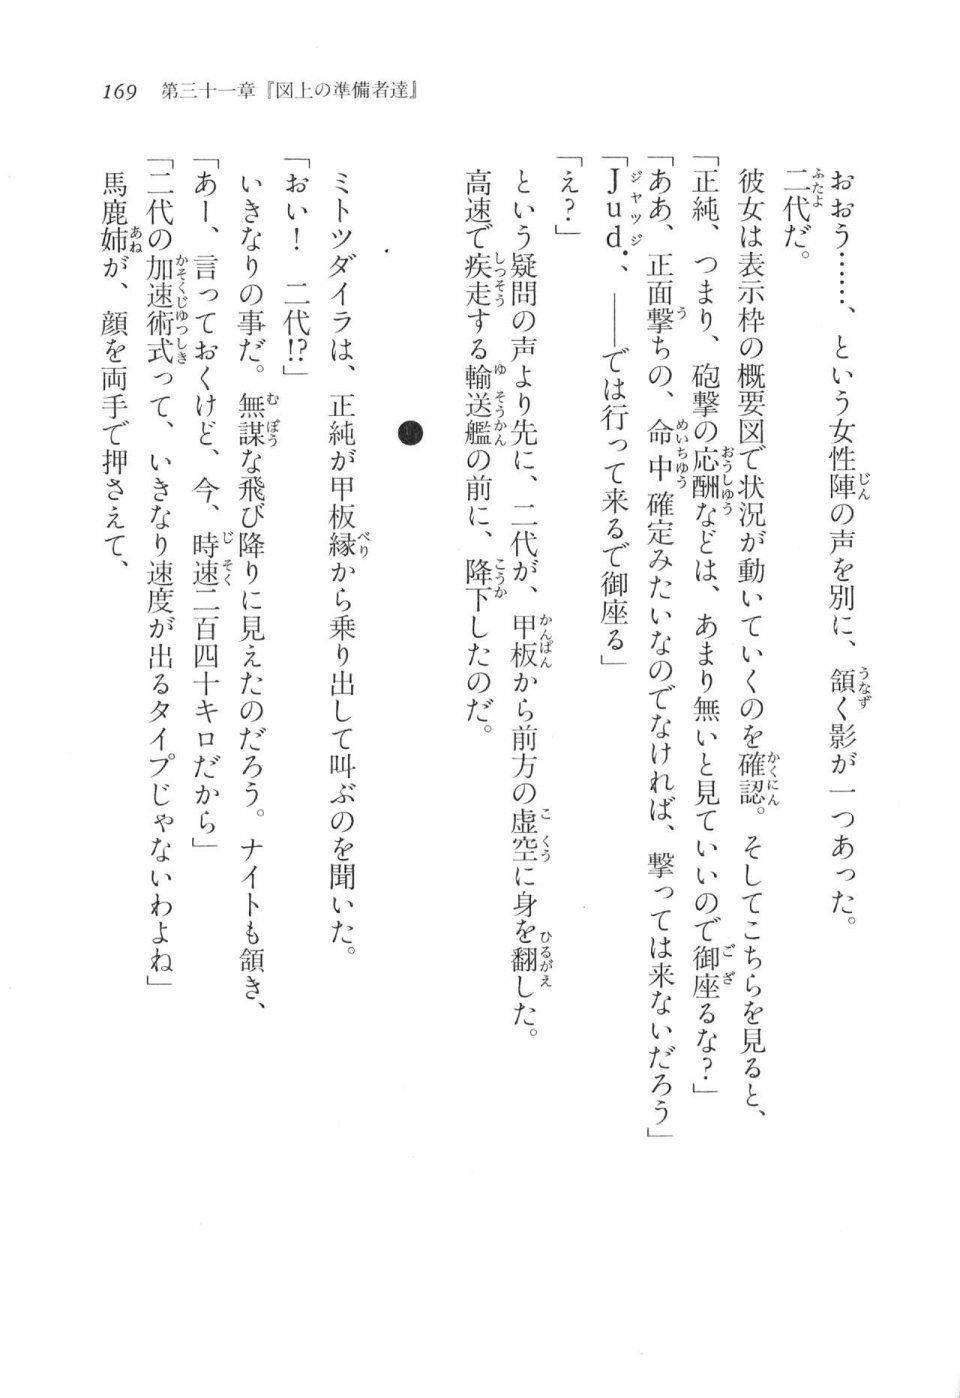 Kyoukai Senjou no Horizon LN Vol 17(7B) - Photo #169